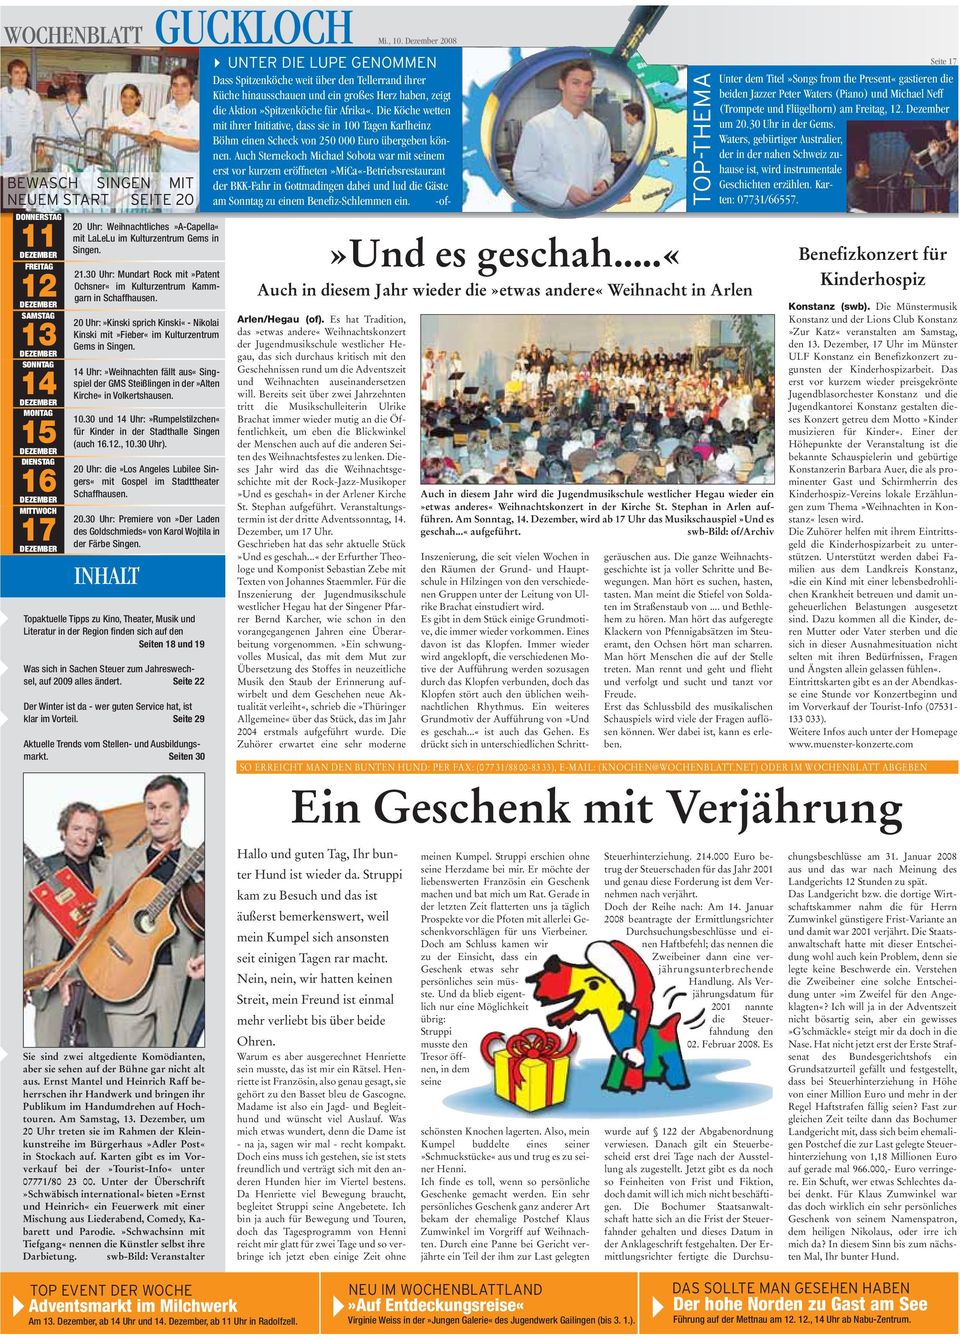 Weihnachtliches»A-Capella«mit LaLeLu im Kulturzentrum Gems in Singen. 21.30 Uhr: Mundart Rock mit»patent Ochsner«im Kulturzentrum Kammgarn in Schaffhausen.